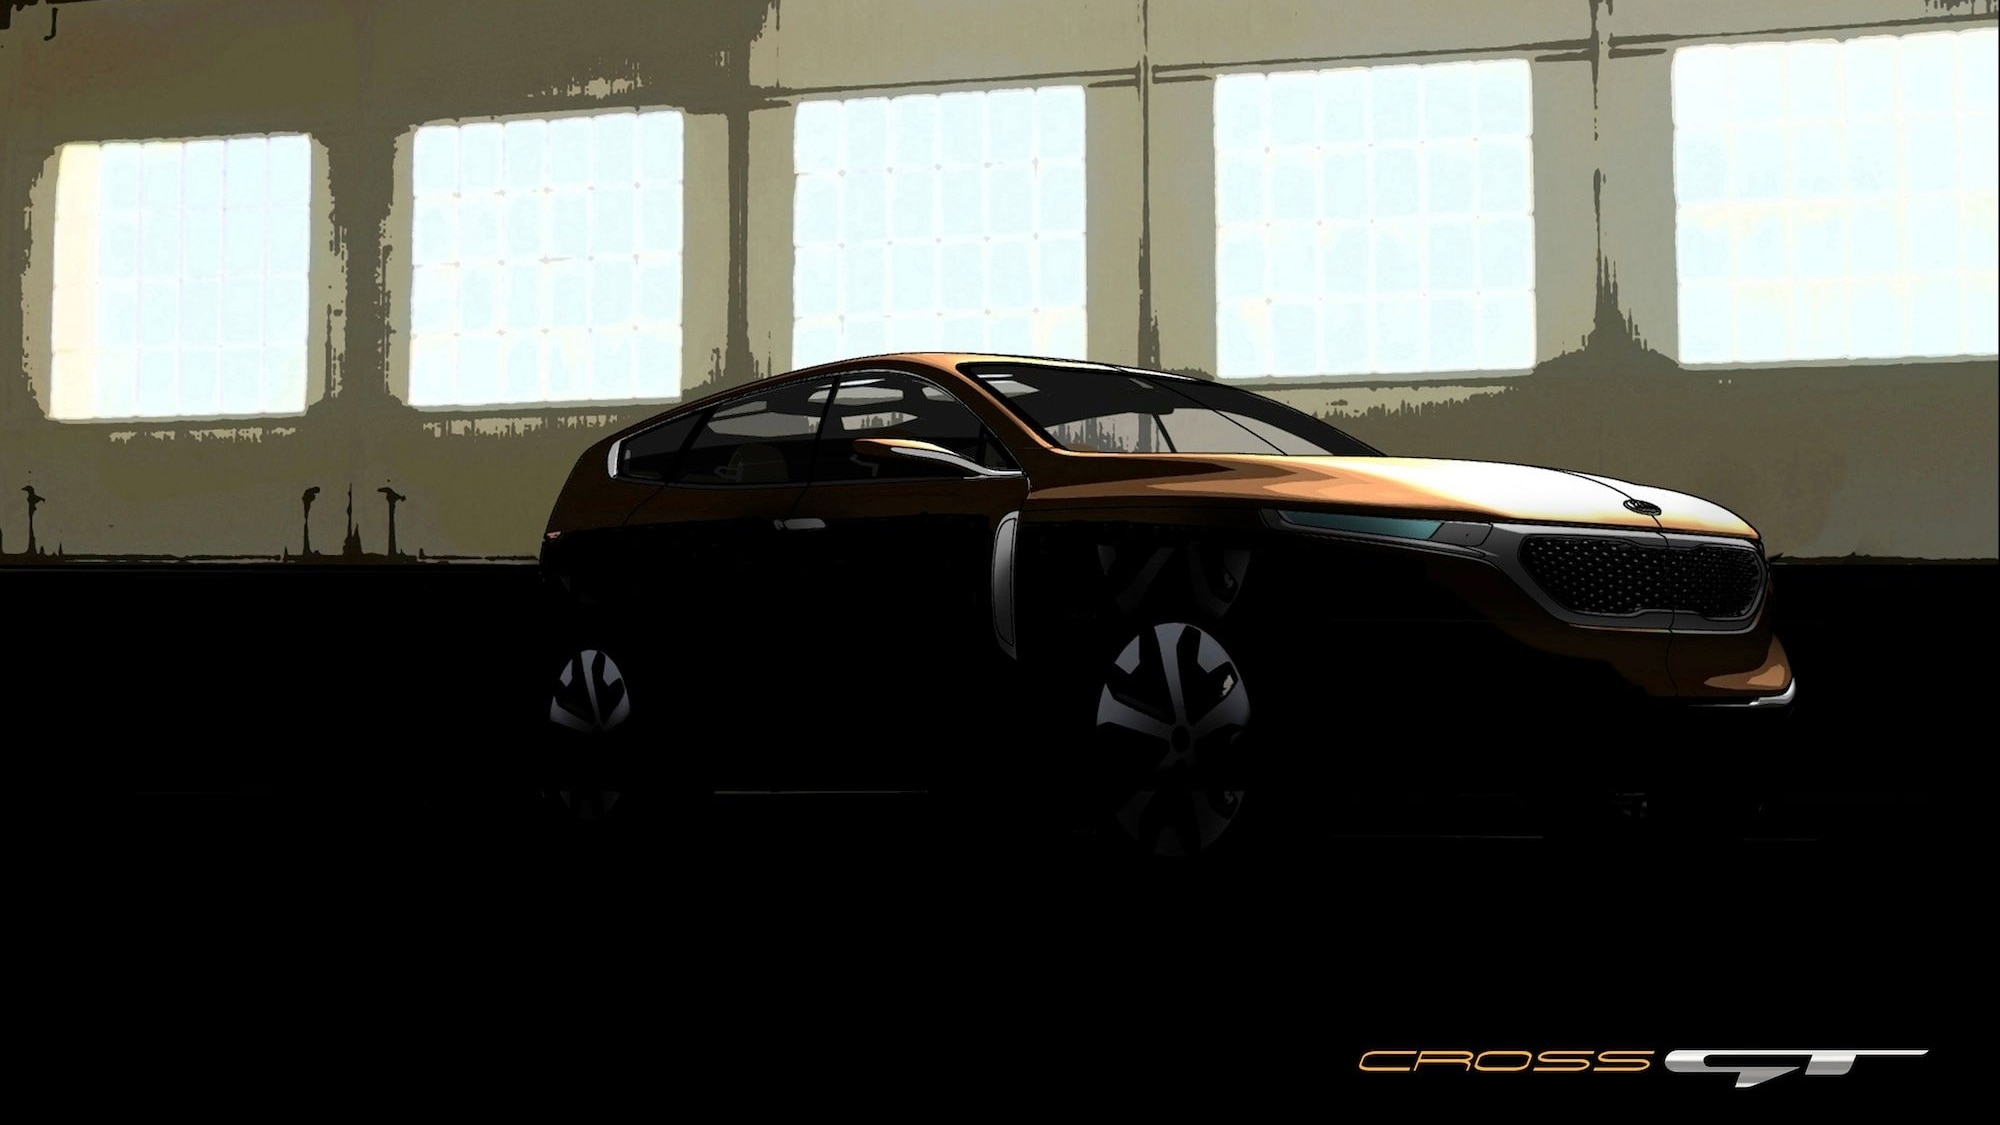 Kia Cross GT Concept